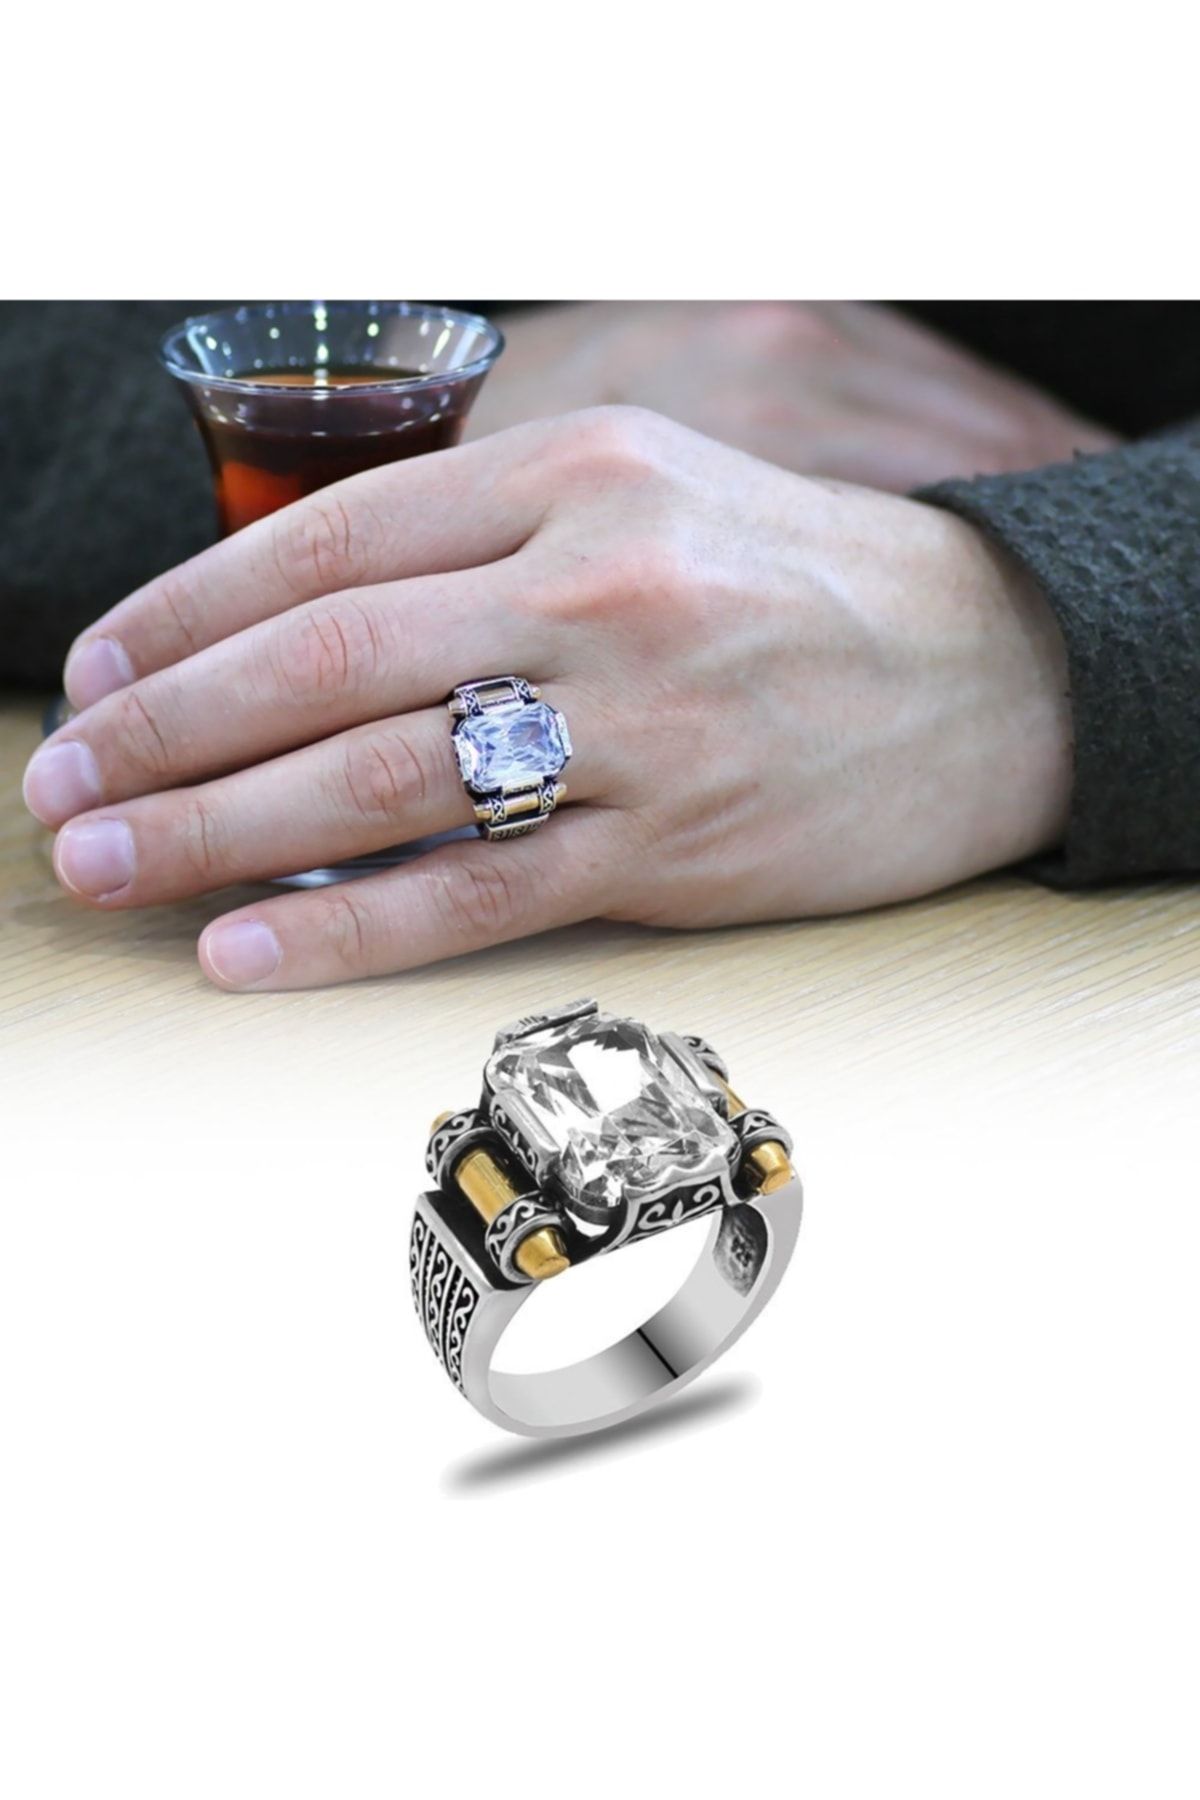 Tesbihane Beyaz Baget Taşlı Avangarde Tasarım 925 Ayar Gümüş "şah Cihan" Yüzüğü